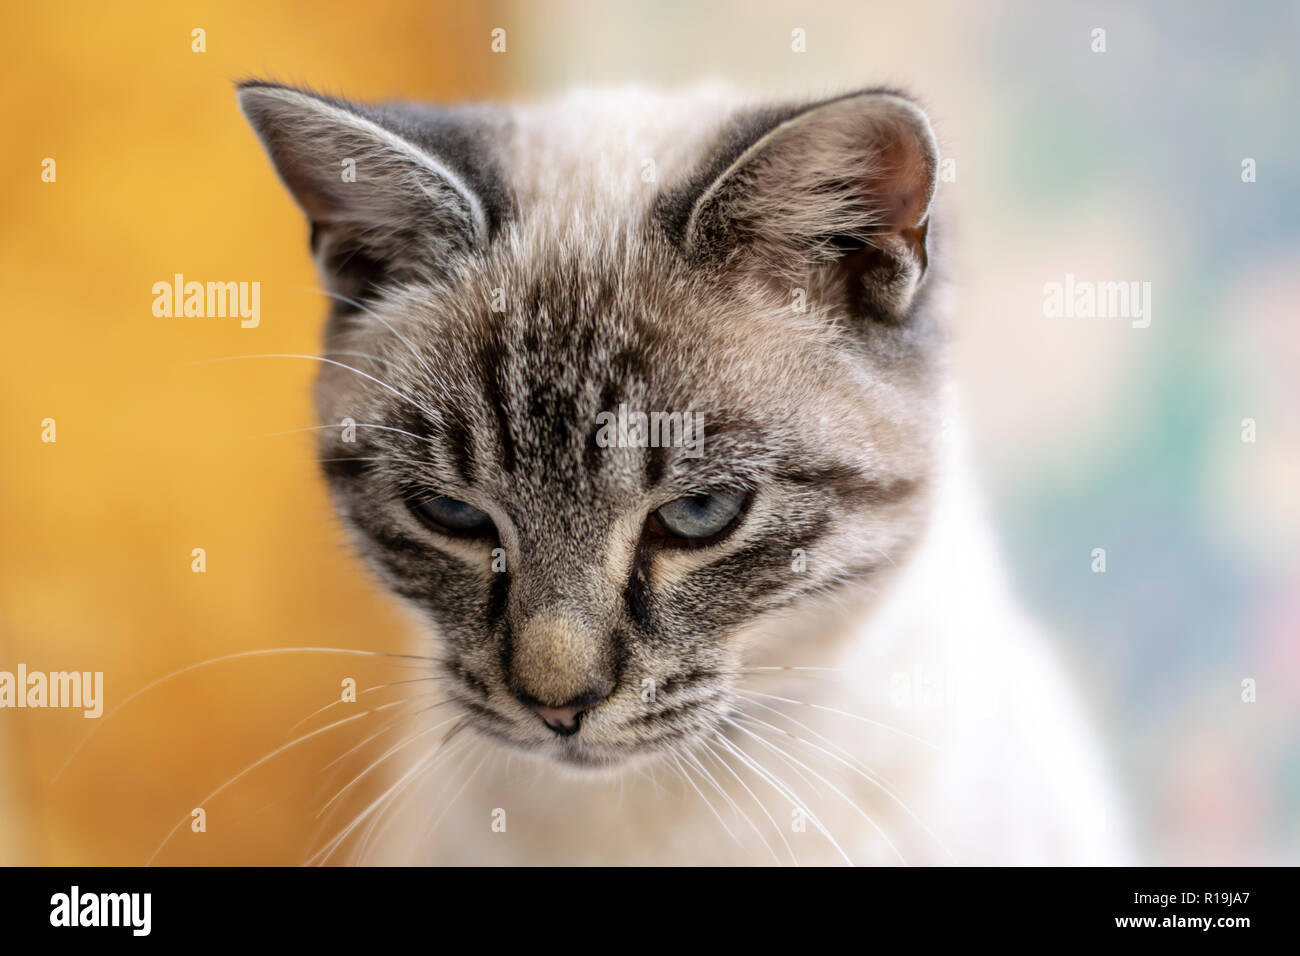 Giovani, cute cat close-up foto ritratto con sfondo bokeh di fondo. Foto Stock